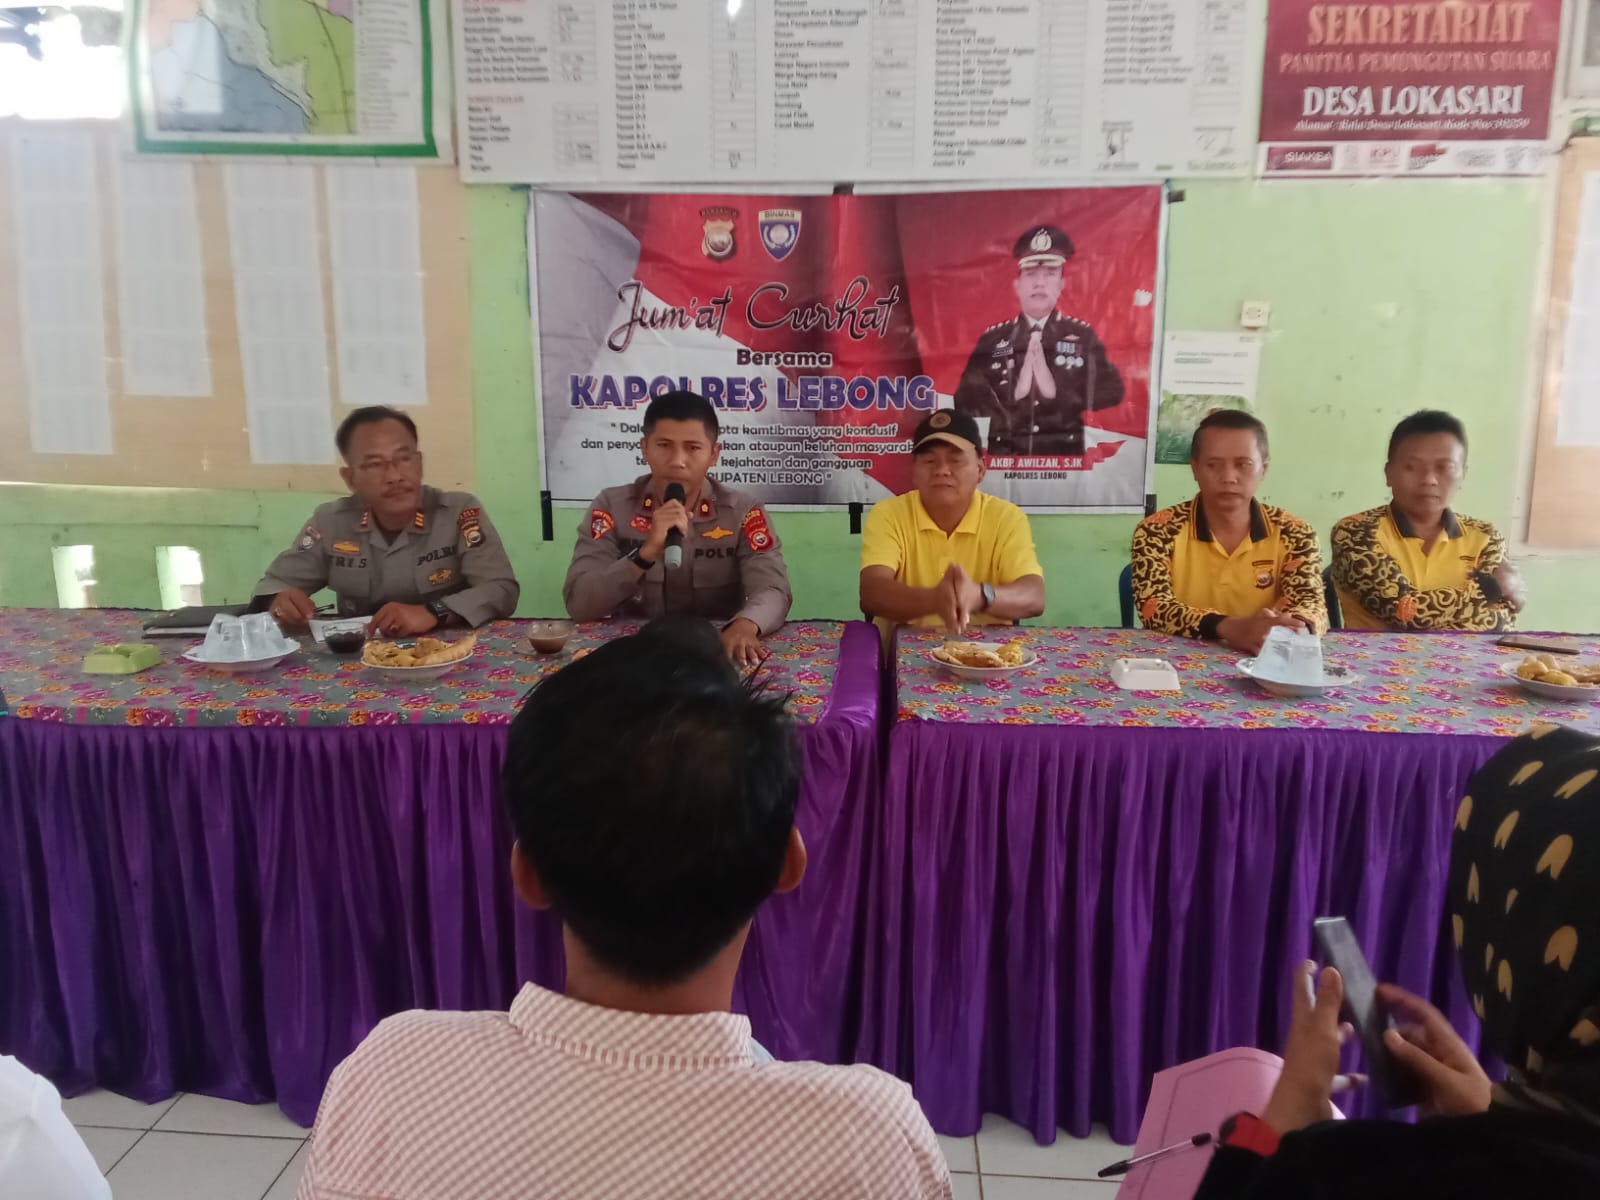 Jum'at Curhat, Wakapolres Lebong Ingatkan Bahaya Hoax Jelang Pemilu 2024 